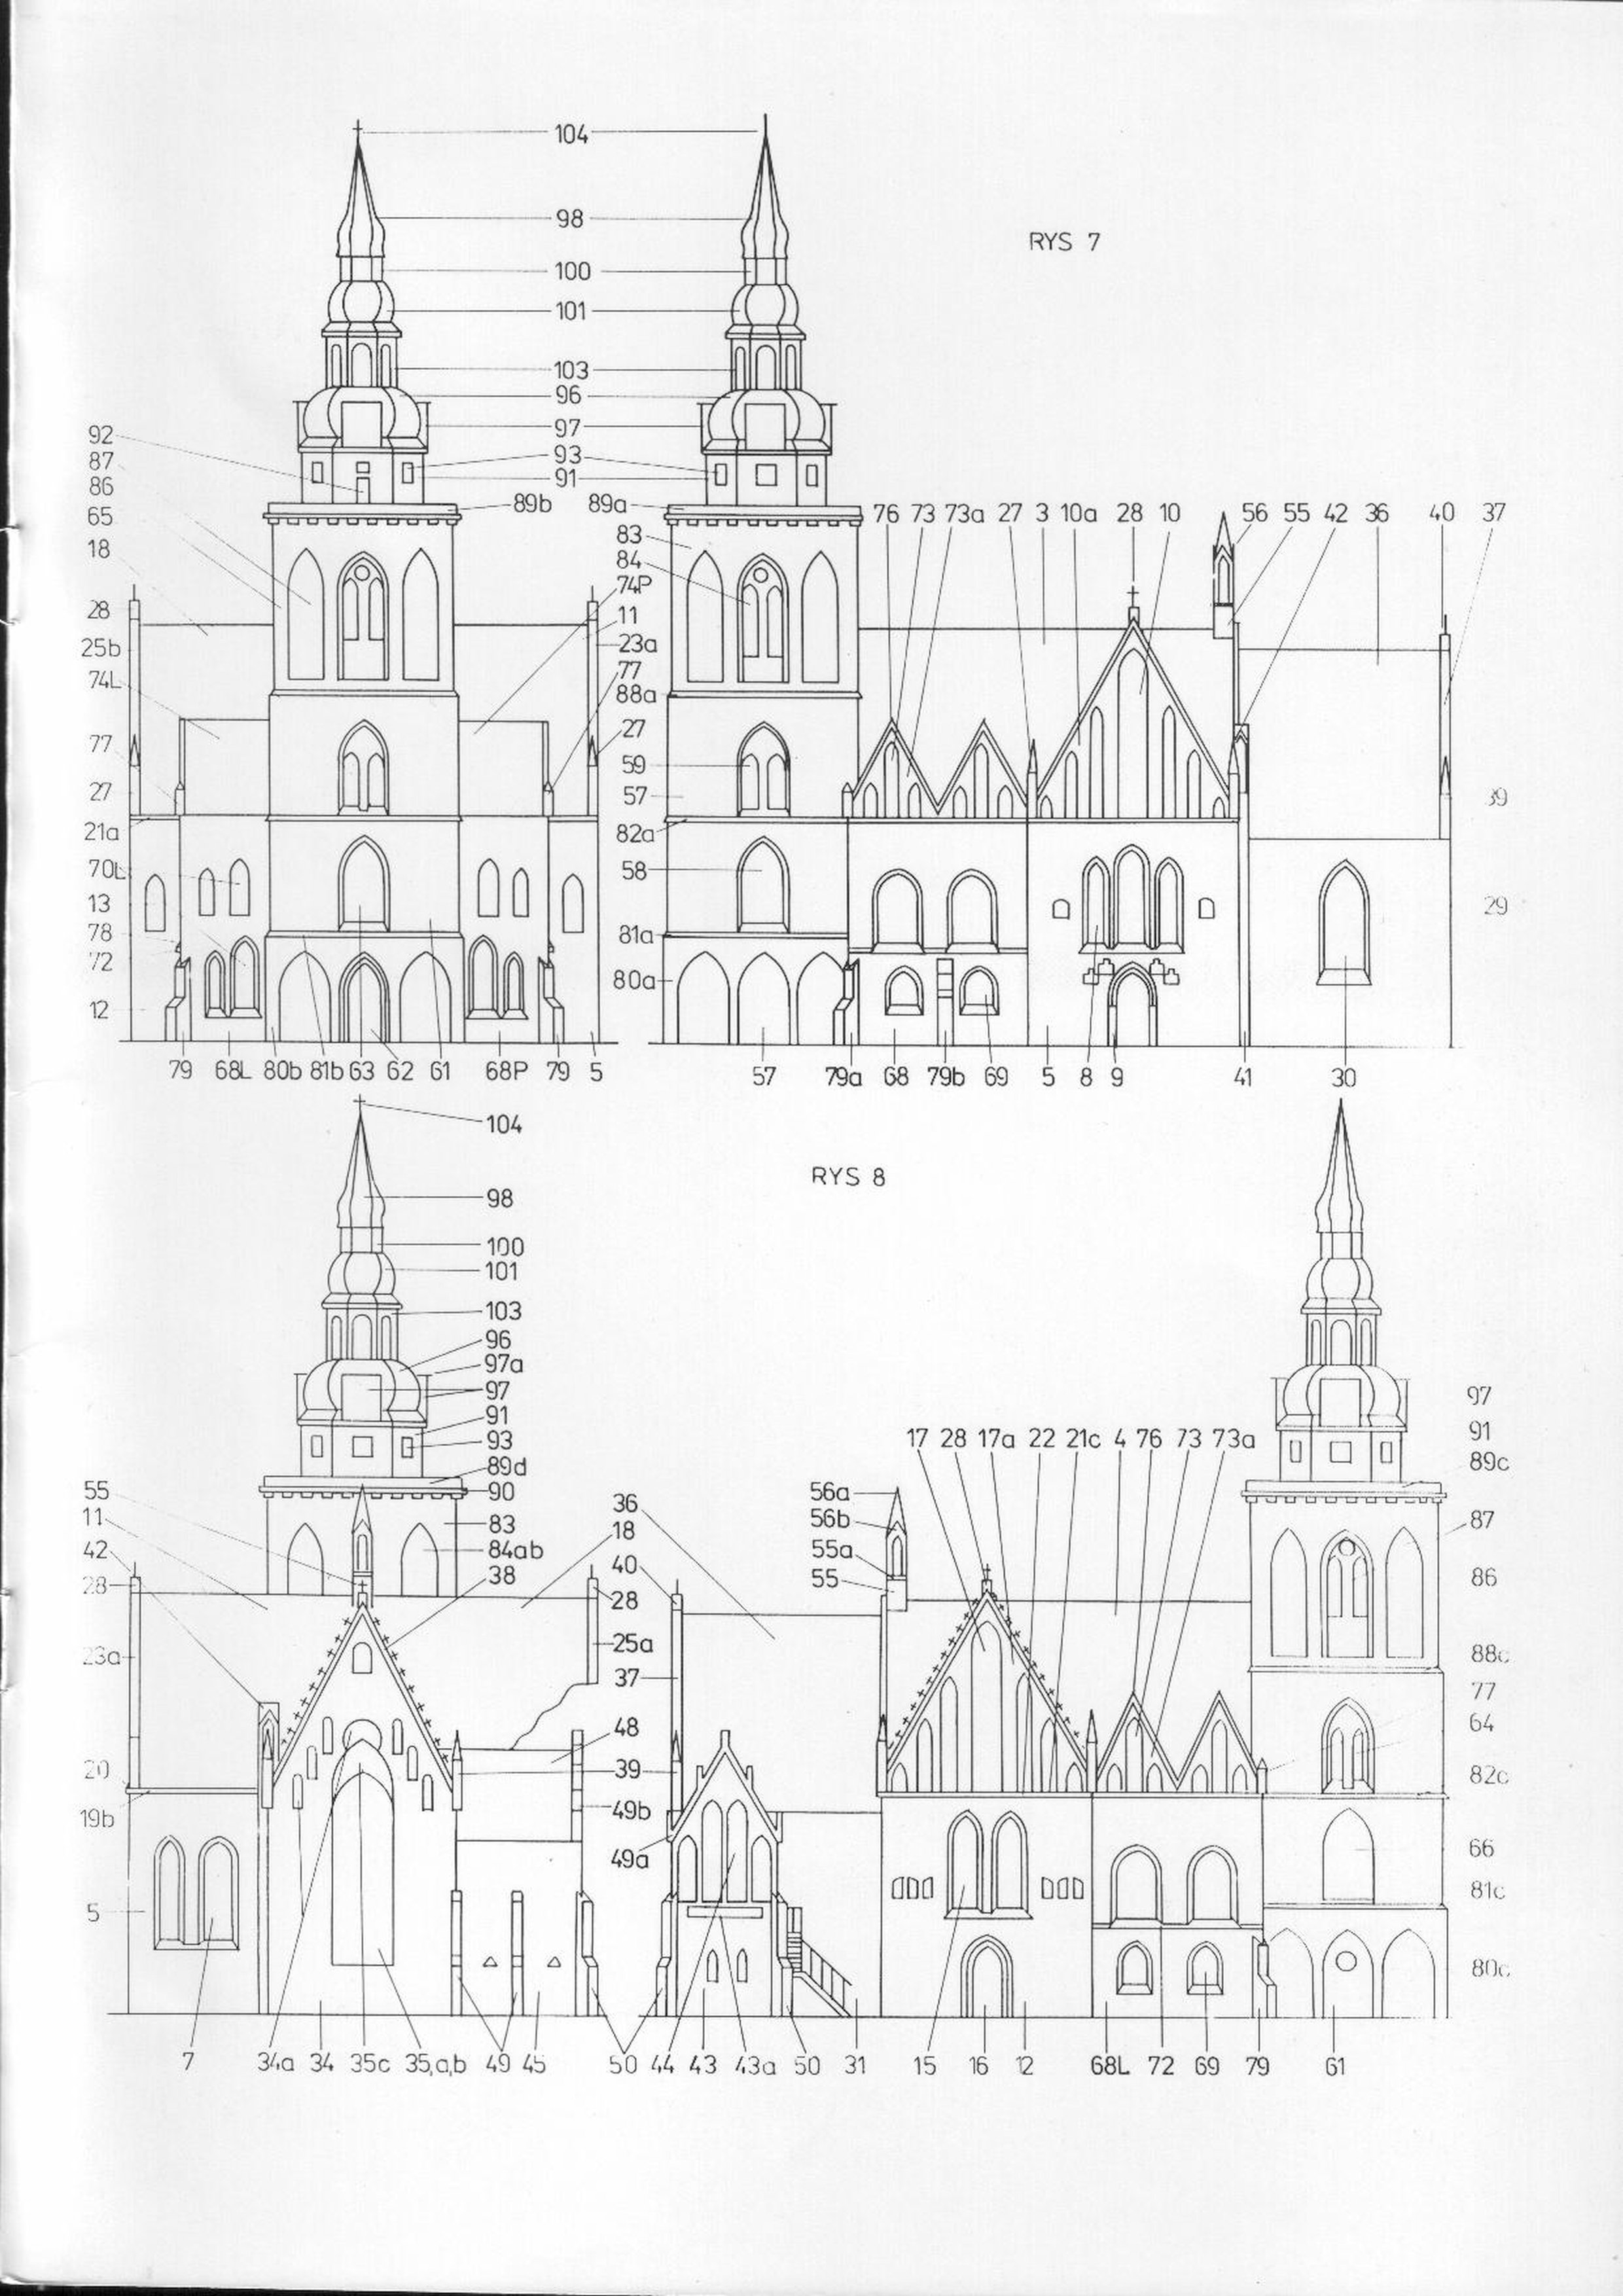 Modelik 2000-03 -  Kościół gotycki w Gryfinie XIIIw - 04.jpg